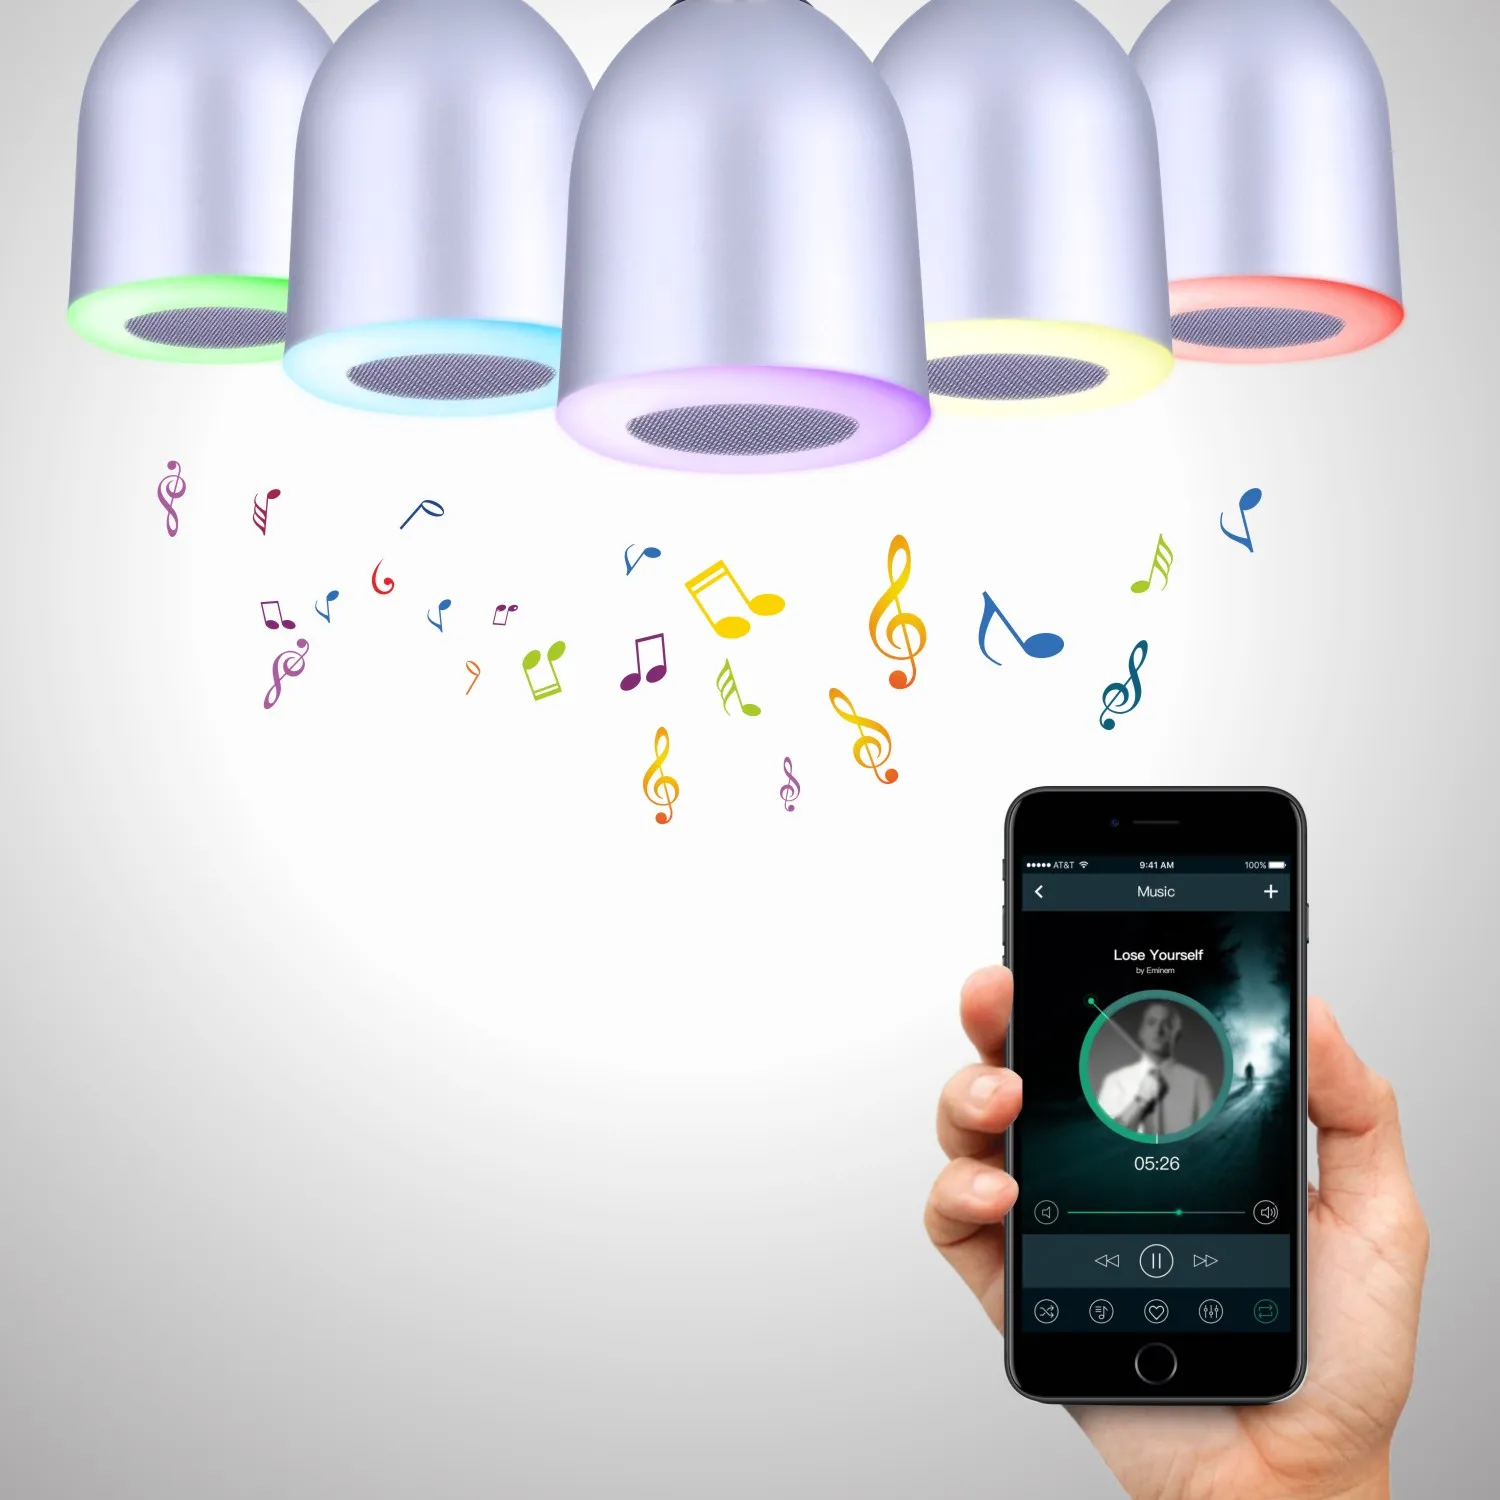 Bluetooth-högtalare E27 LED-lampa Färgrik lampa för iOS Android Smart Phone PC Musikspelare Lampa Färger Justerbar trådlös av DHL